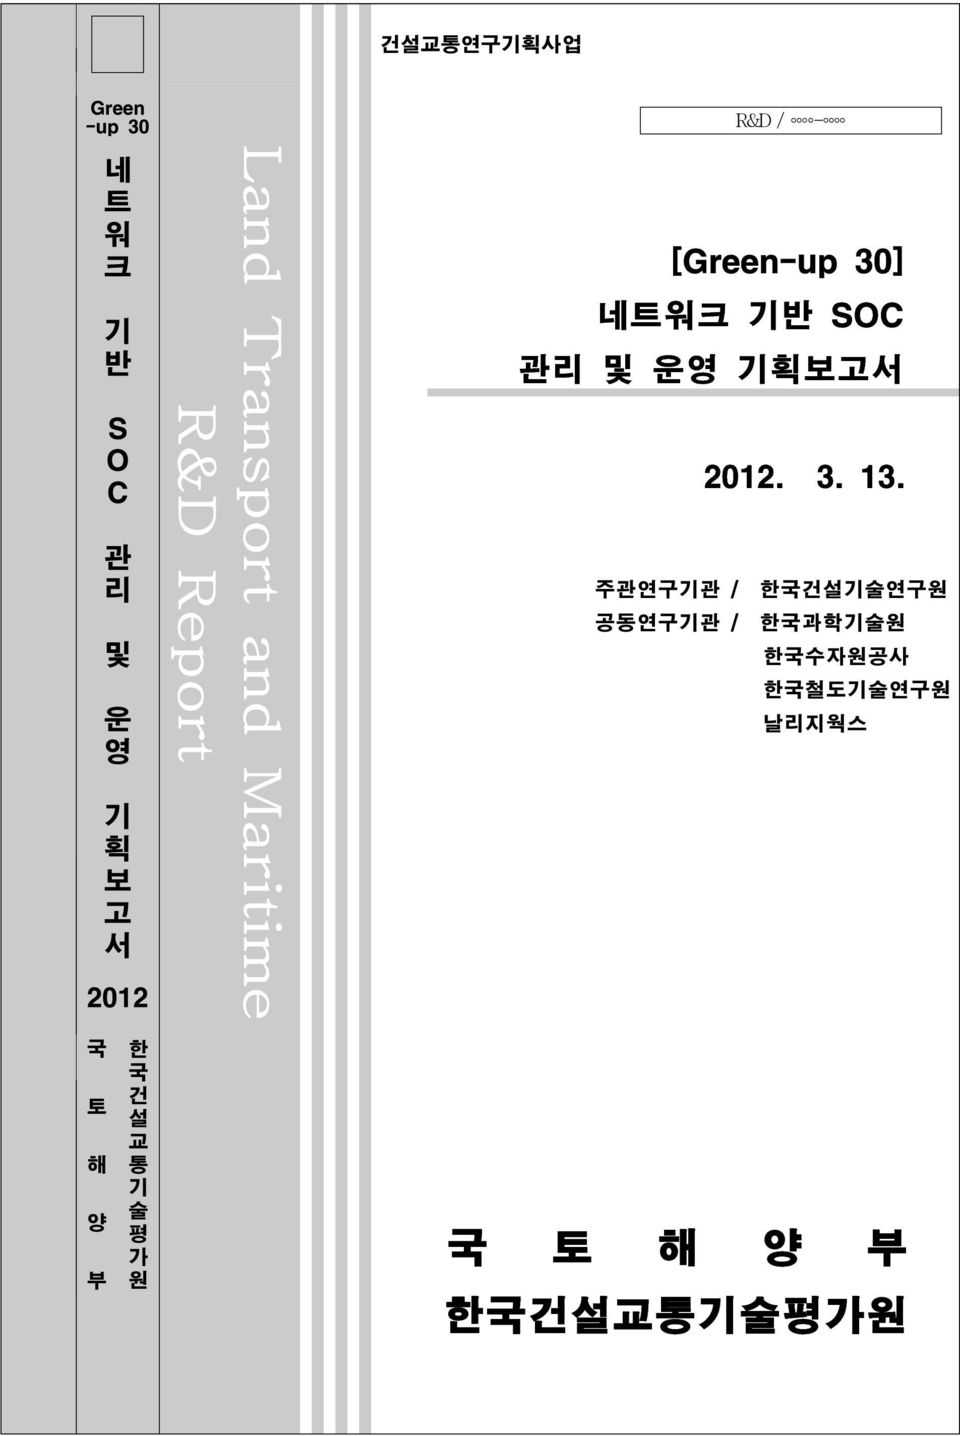 SOC 관리 및 운영 기획보고서 2012. 3. 13.